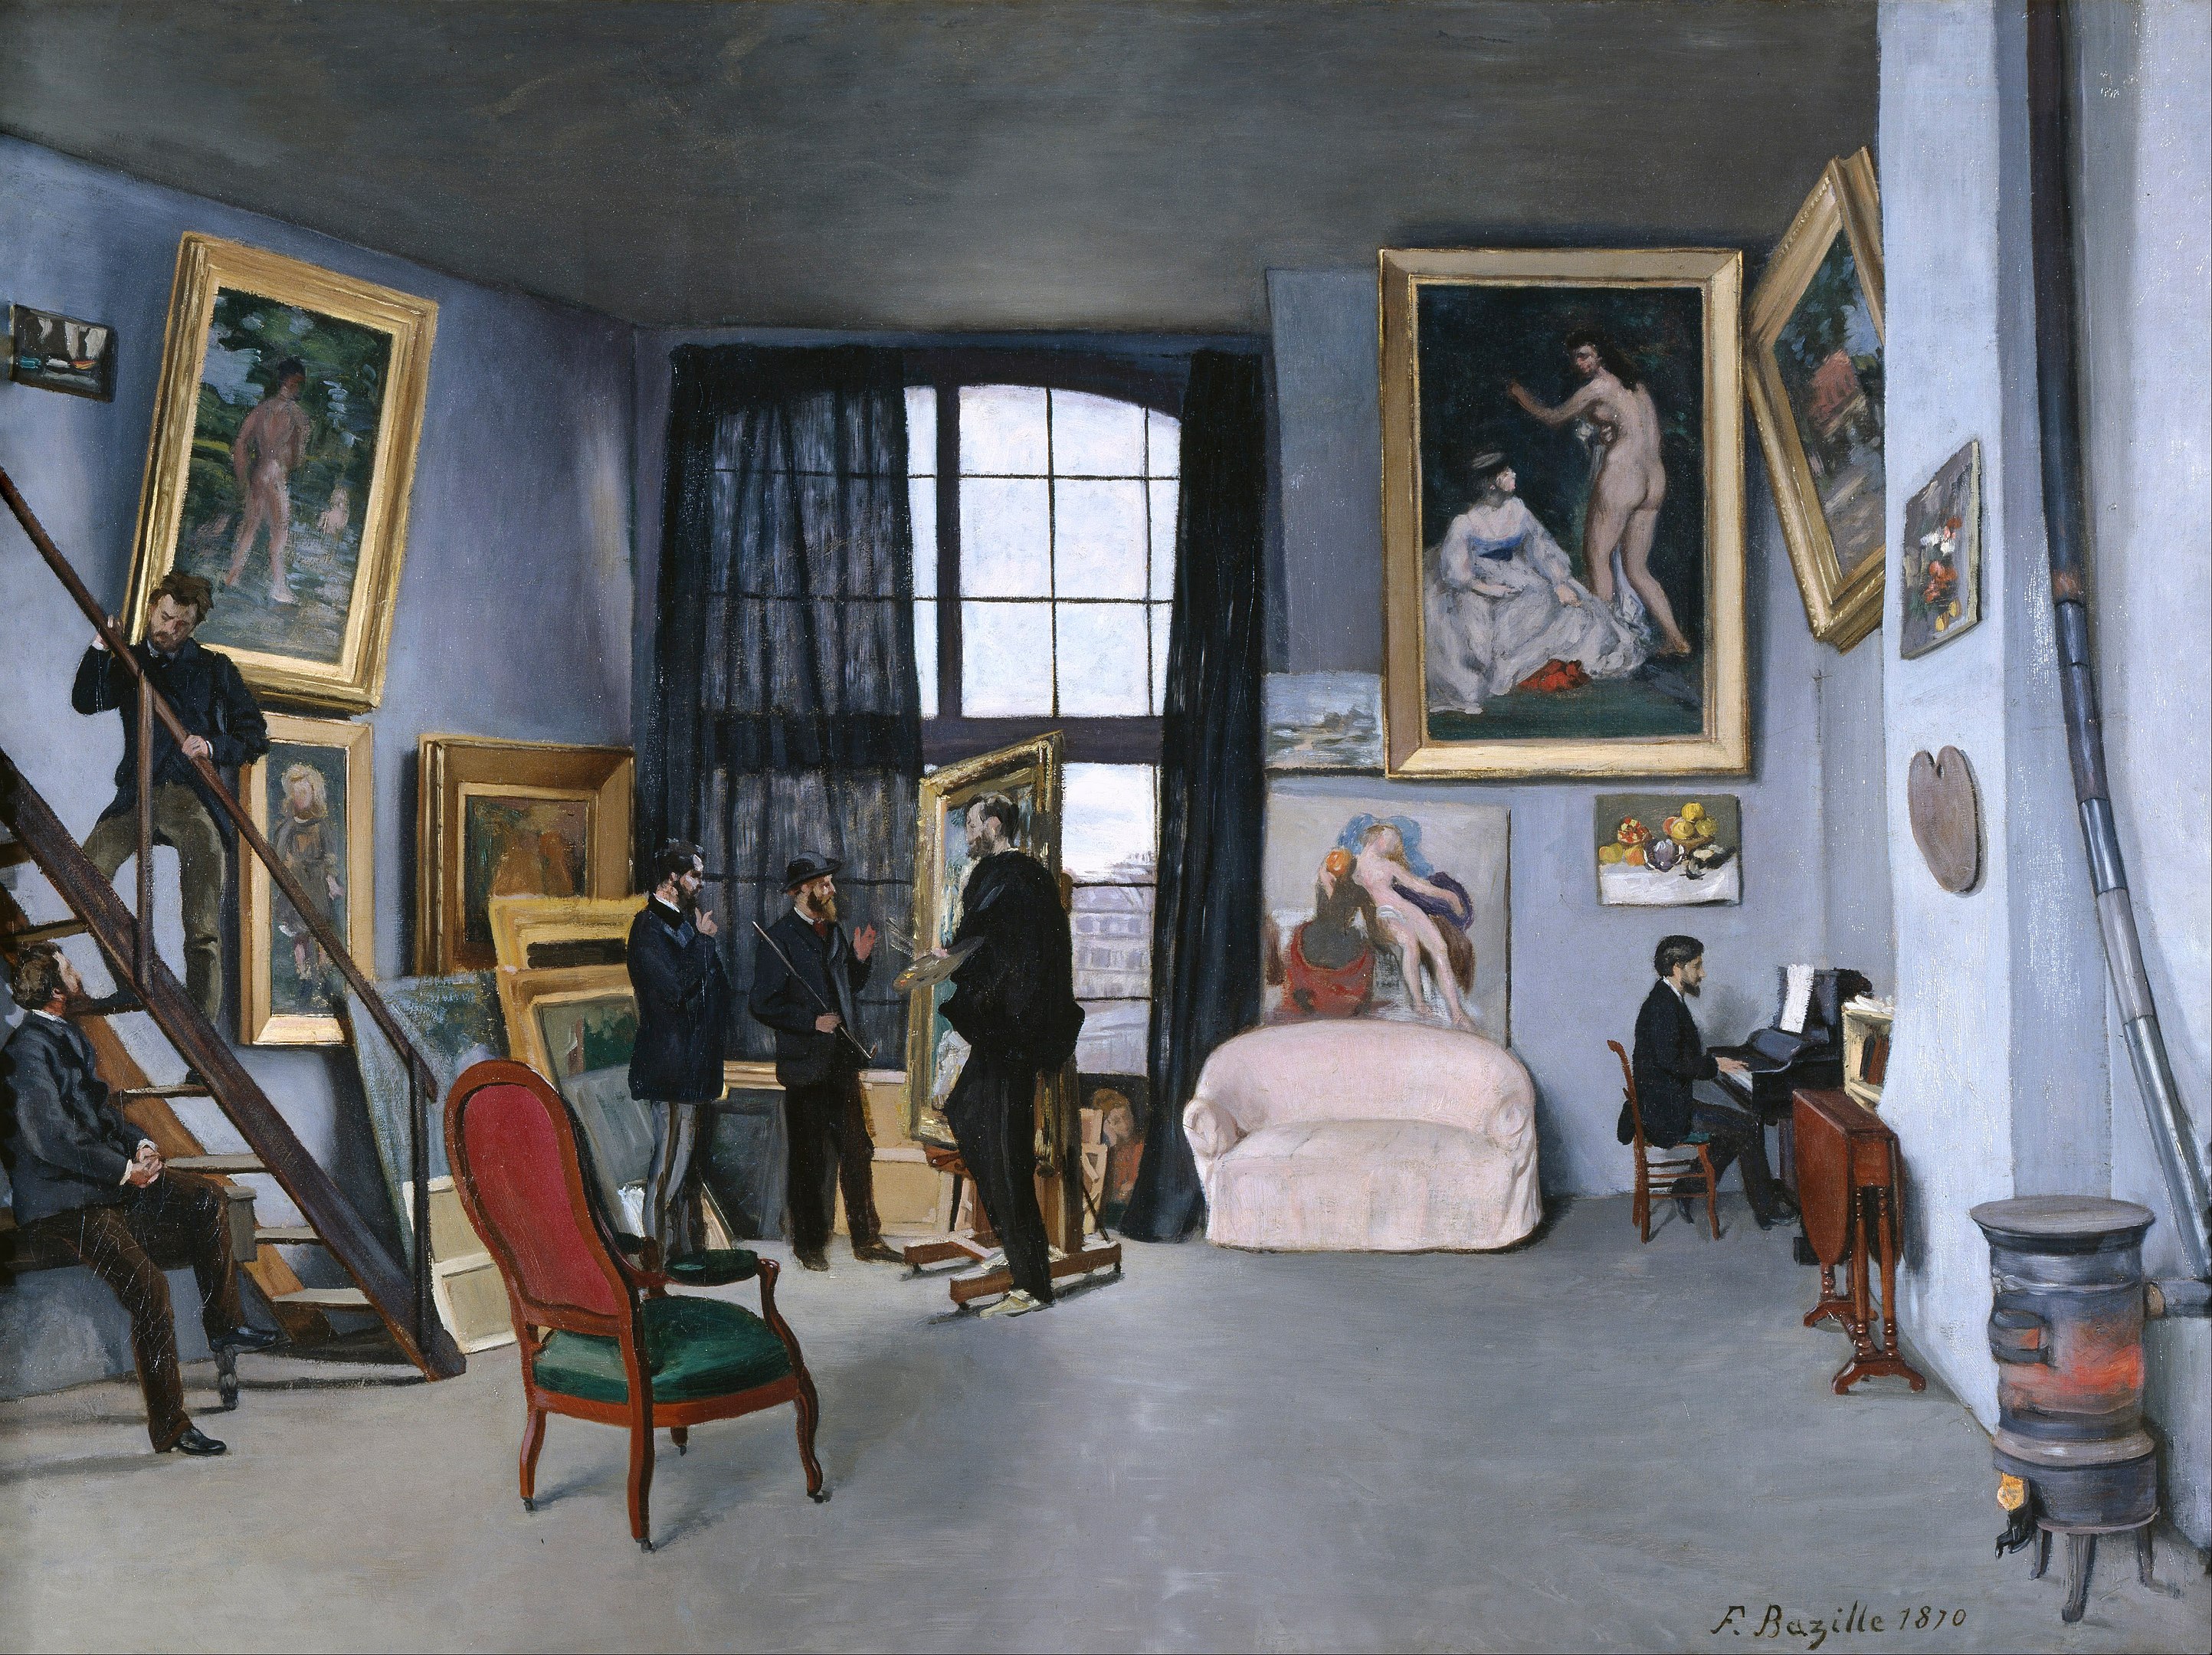 El taller de Bazille by Frédéric Bazille - 1870 - 98 x 128 cm Musée d'Orsay